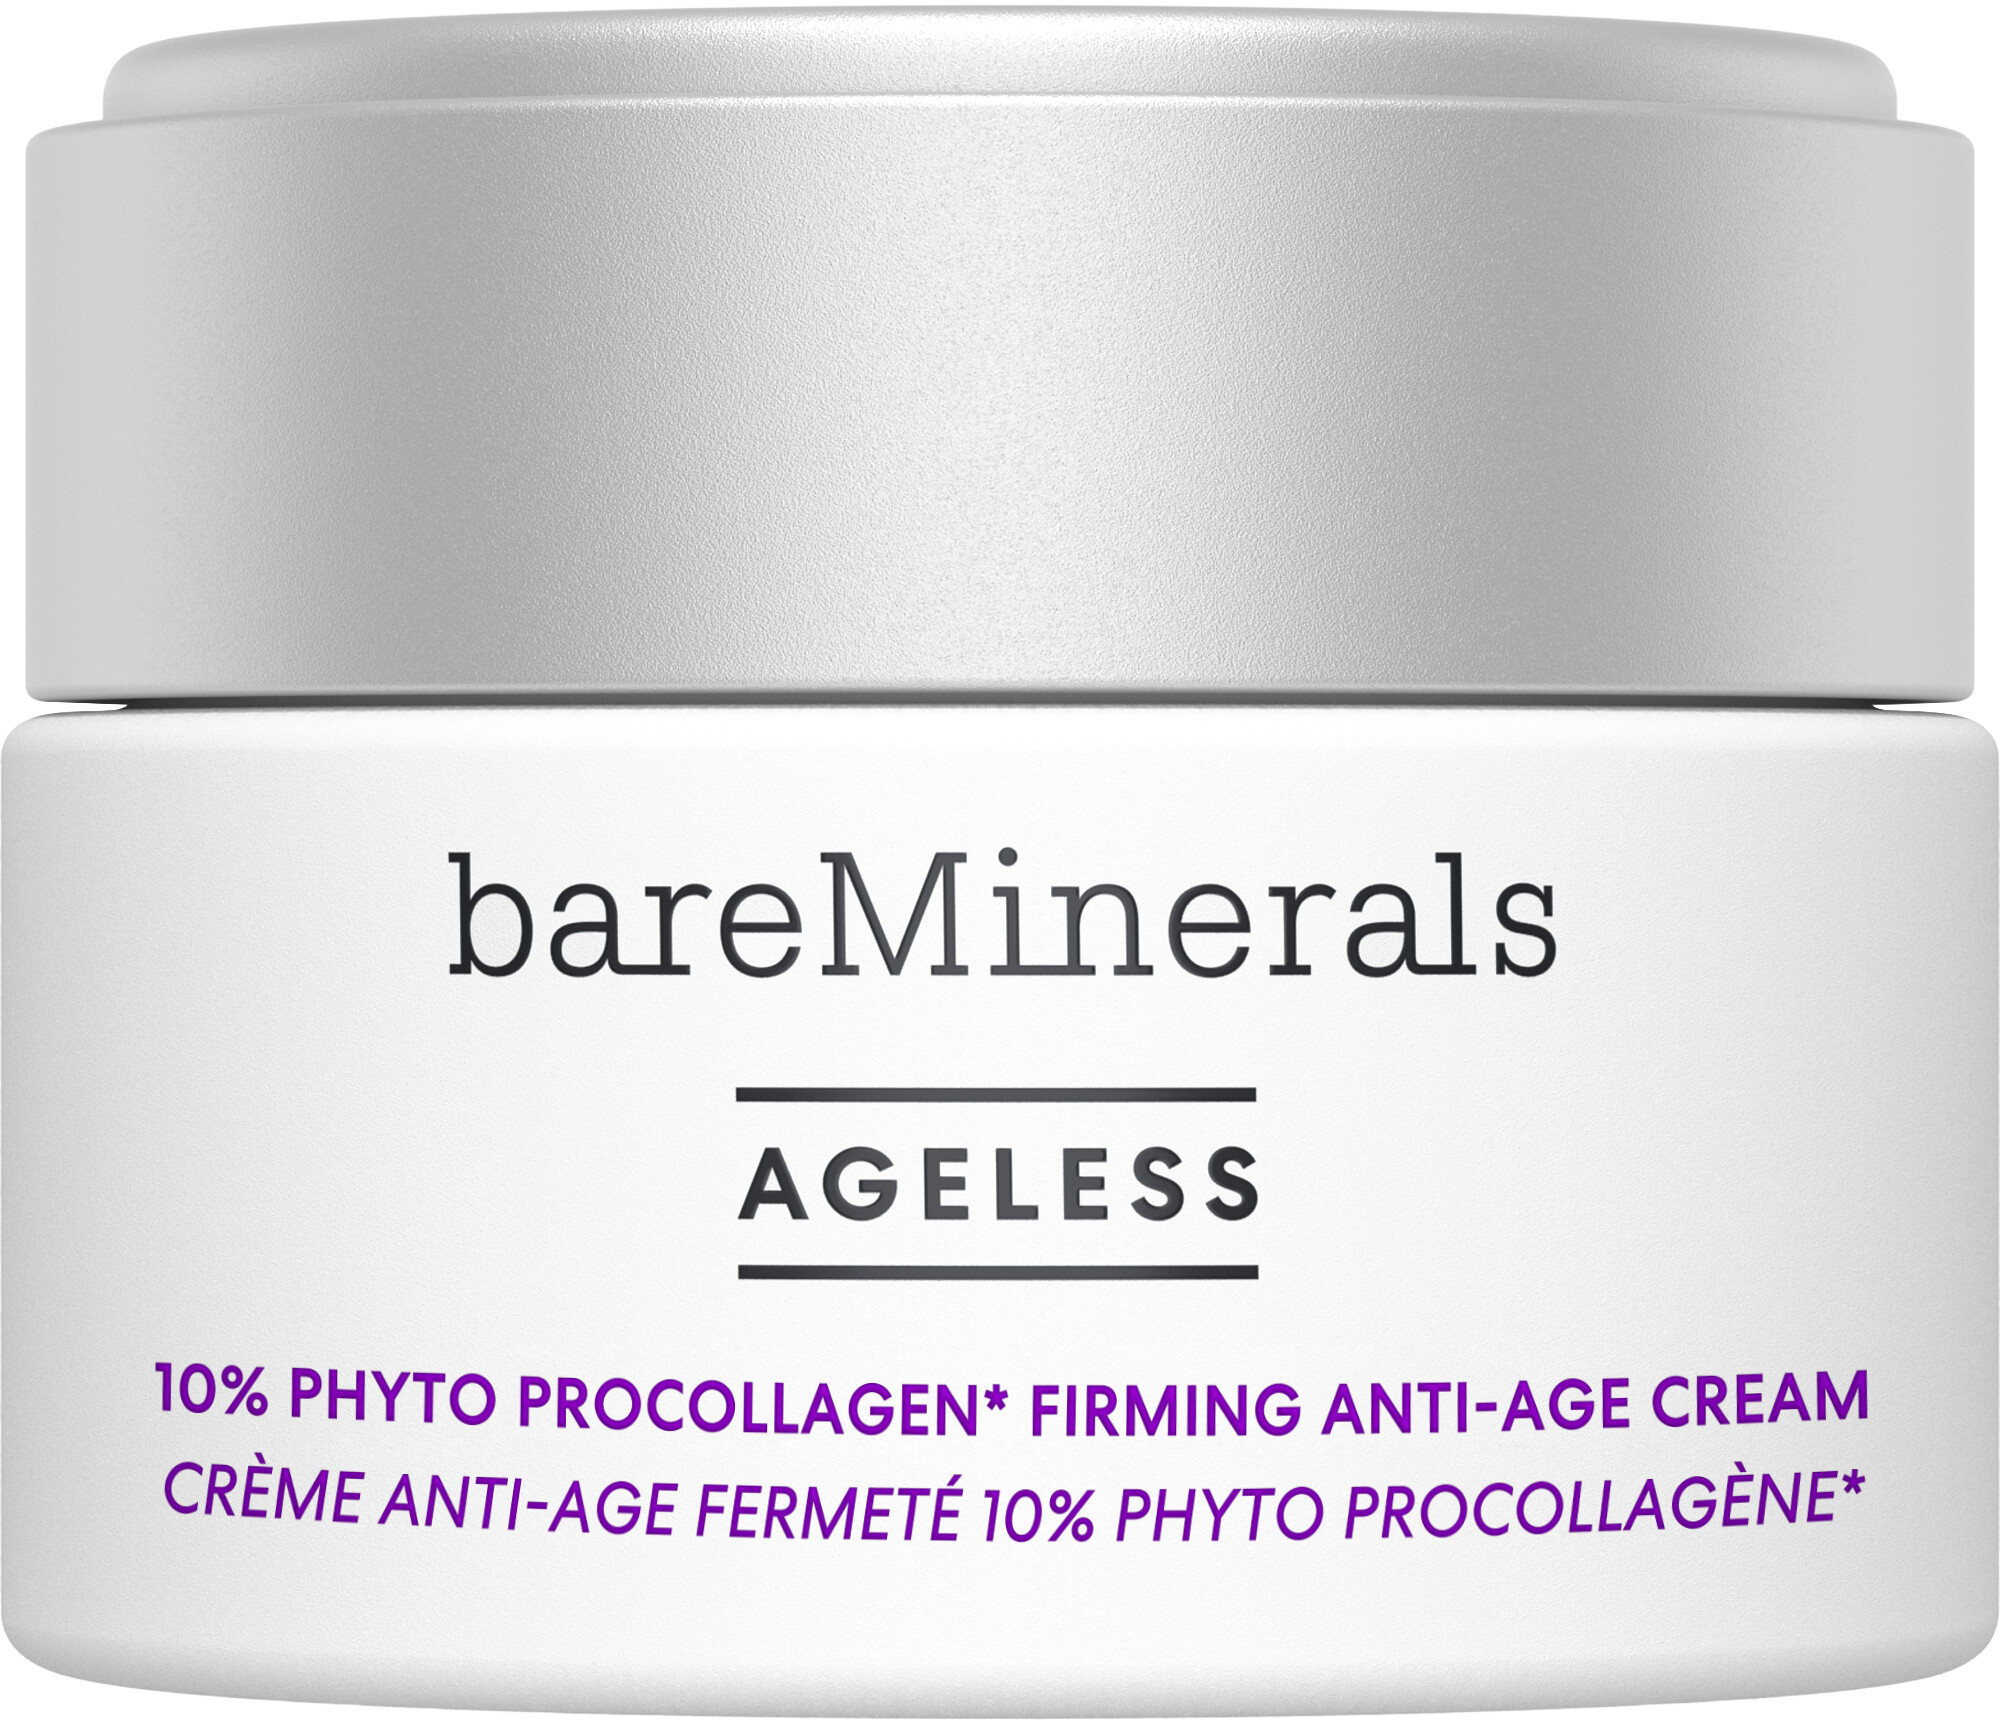 bareMinerals Ageless Phyto ProCollagen Anti-Age Firming Cream 50ml